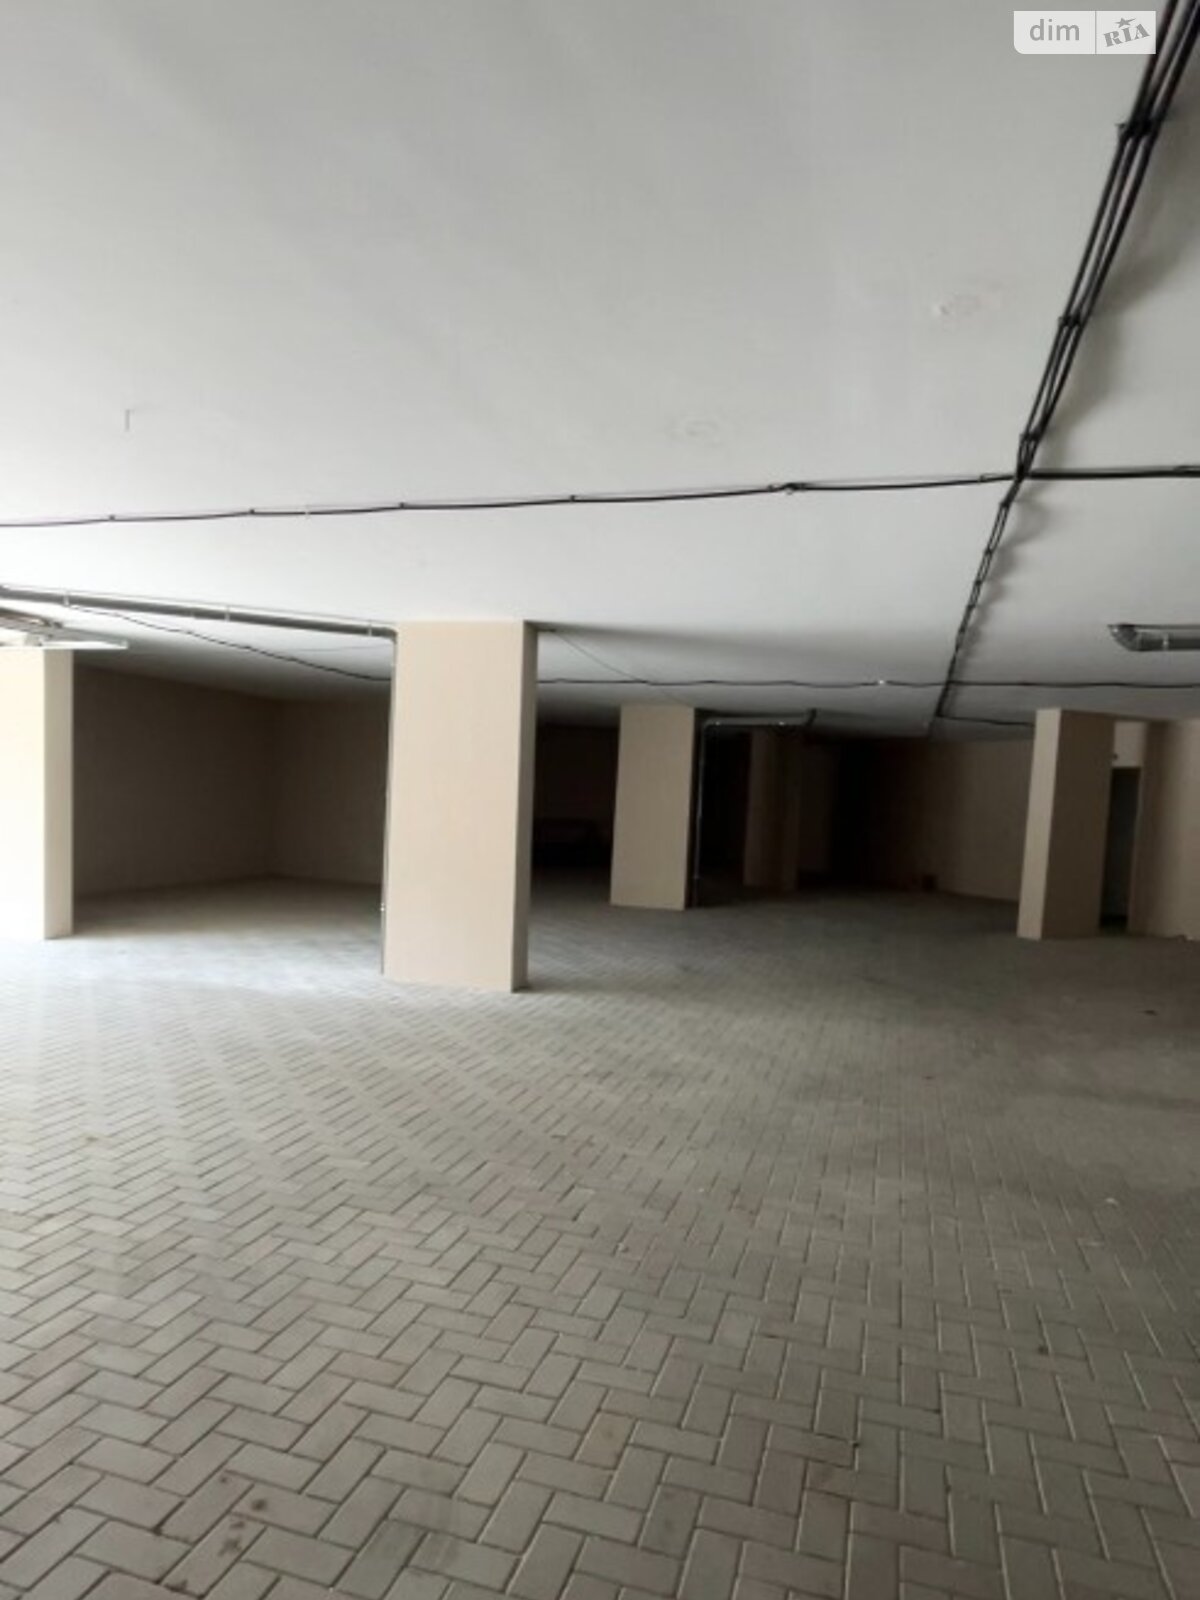 Место в подземном паркинге под легковое авто в Одессе, площадь 19.03 кв.м. фото 1